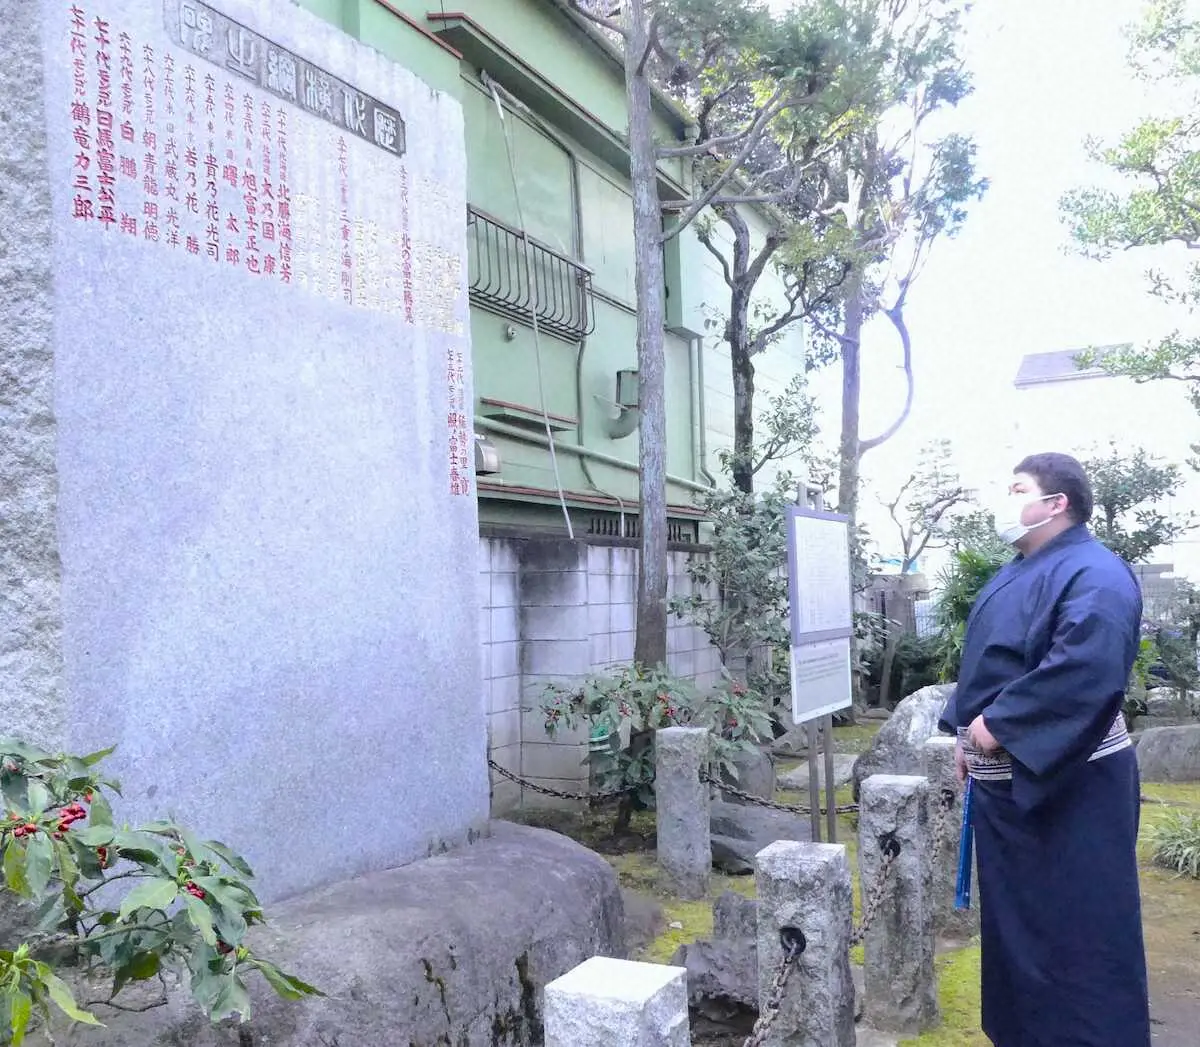 新十両・落合　野見宿禰神社の歴代横綱石碑を見て「鳥肌が立ちました」新弟子として教習所の授業に参加